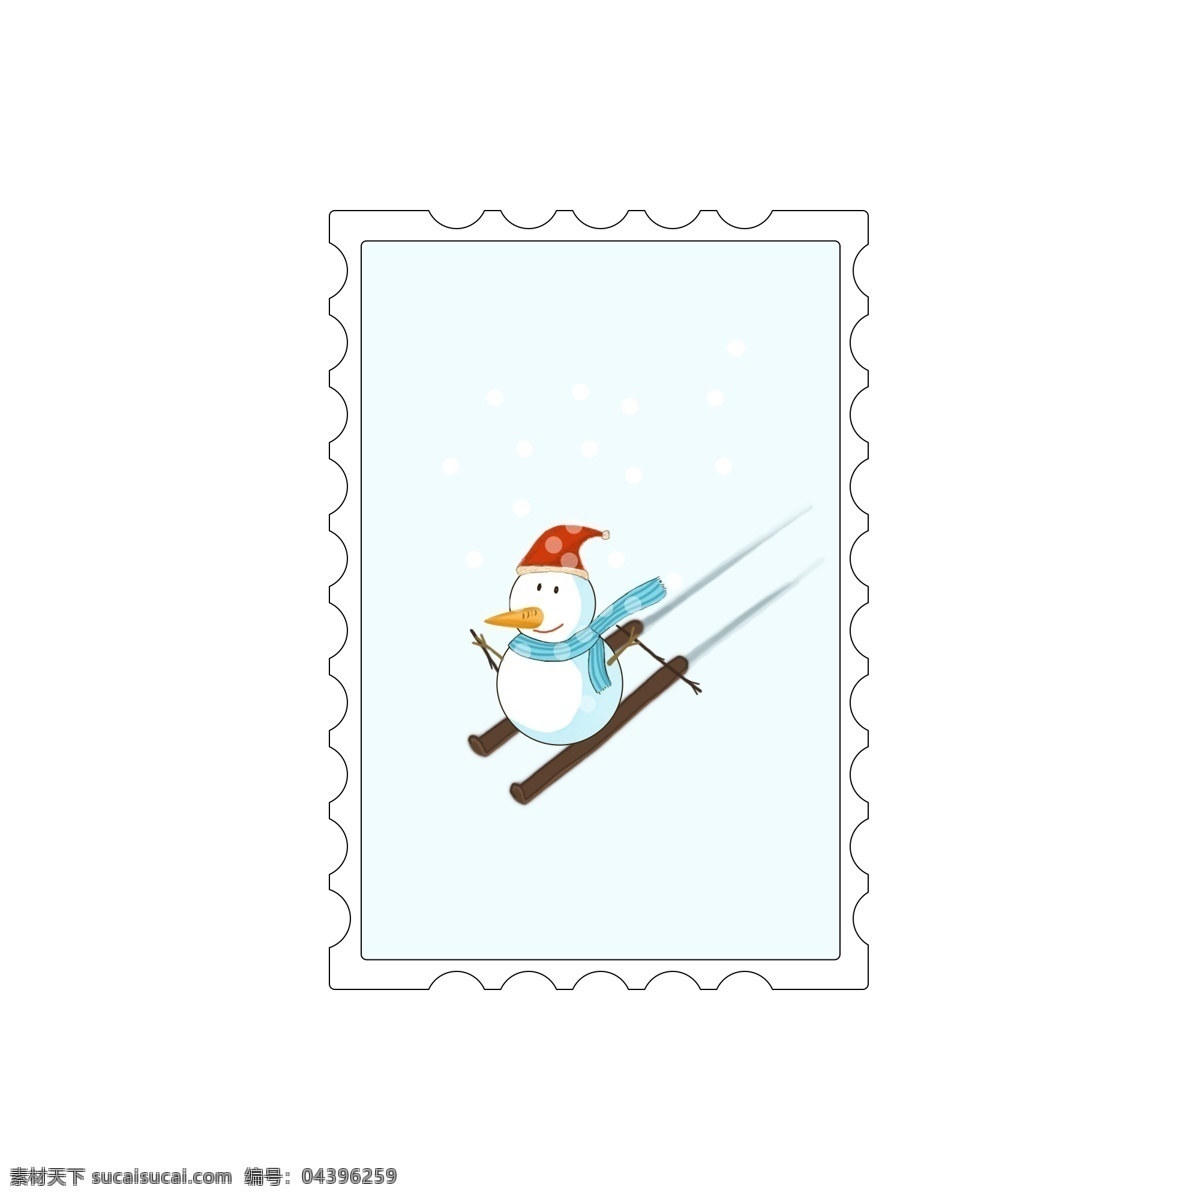 原创 手绘 圣诞节 邮票 装饰元素 雪人 手绘圣诞元素